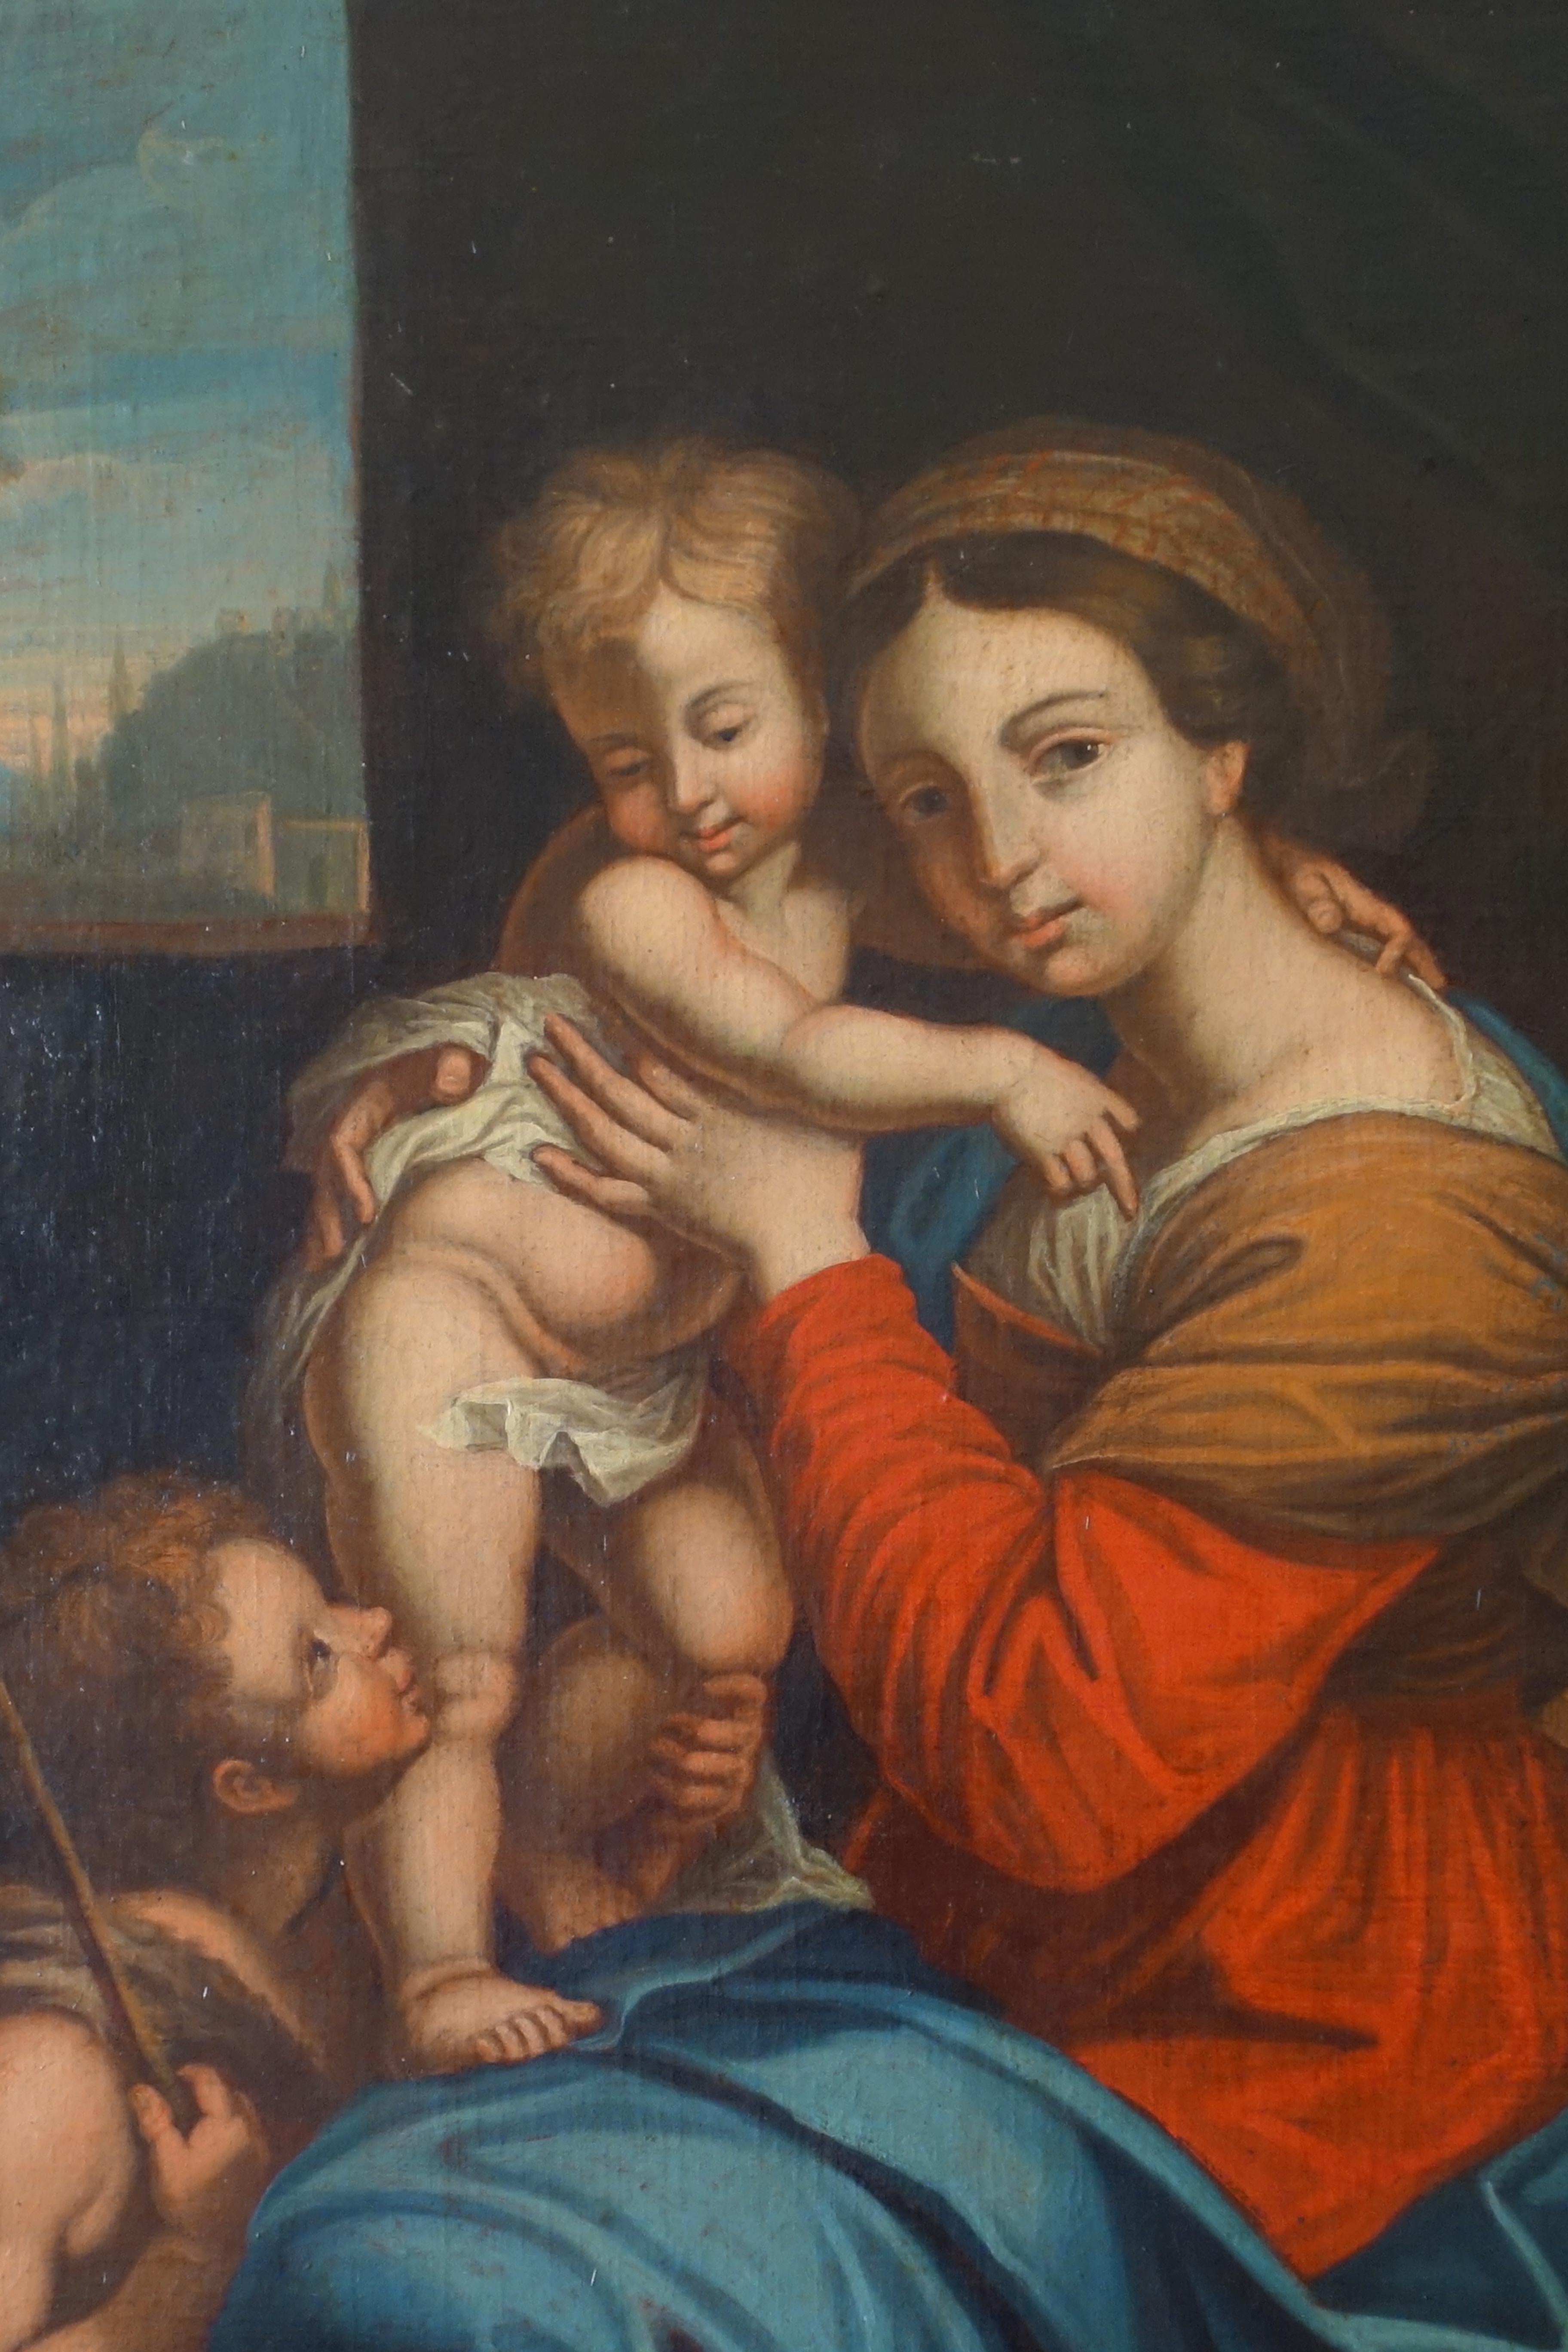 Französische Schule des späten 18. oder frühen 19. Jahrhunderts, antikes Gemälde mit der Jungfrau Maria, die das Jesuskind hält, und dem Heiligen Johannes dem Täufer.
Unser Werk wurde nach dem Vorbild der berühmten Madonna vom Stuhl des